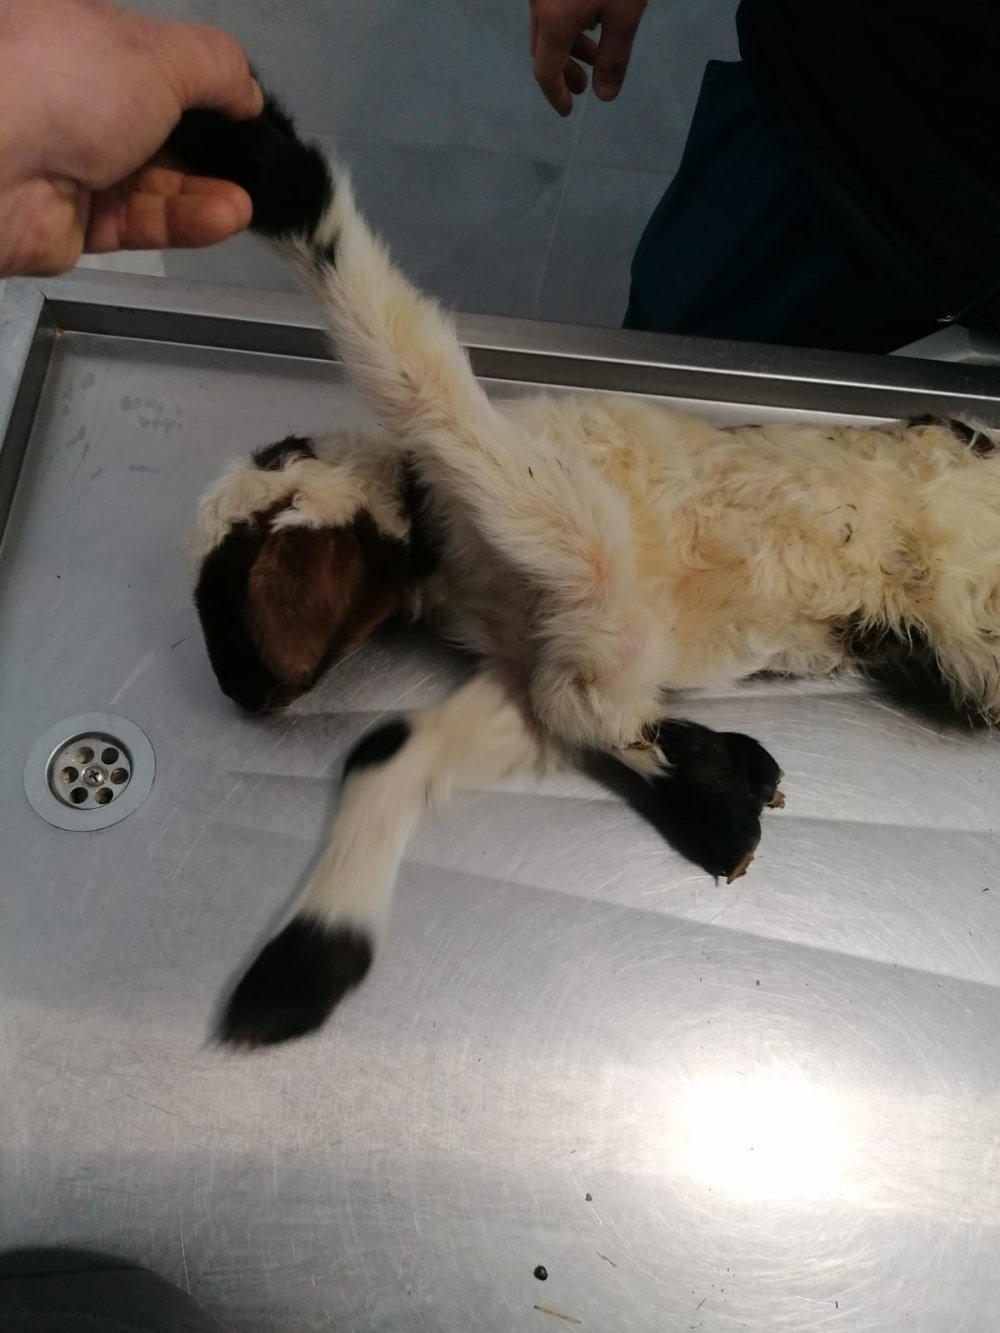 Denizli’nin Pamukkale ilçesinde besicilik yapan Mehmet Bülbül’e ait koyun 5 ayaklı kuzu doğurdu. Şaşkınlık ve korku içerisinde hayvan hastanesine götürdüğü kuzunun sağlıklı olduğunu 5 ayaklı doğmasının nadir görülen bir anomali olduğu belirtildi.